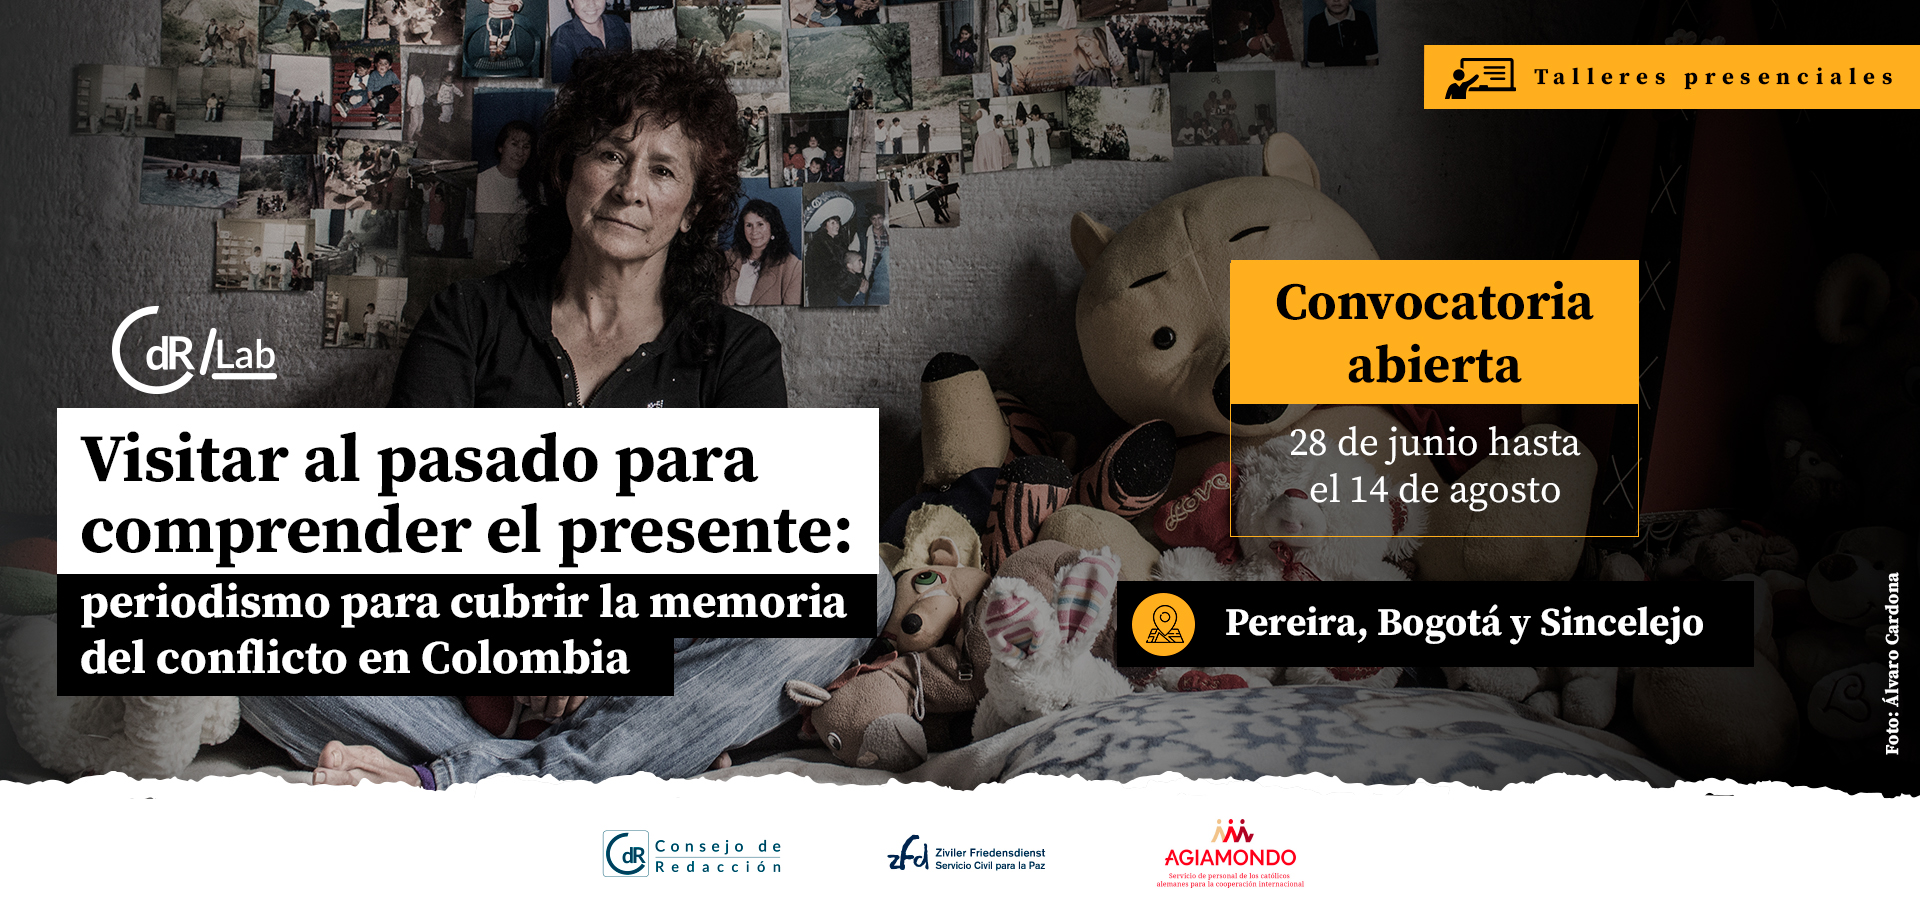 CdR/Lab Visitar al pasado para comprender el presente: periodismo para cubrir la memoria del conflicto en Colombia